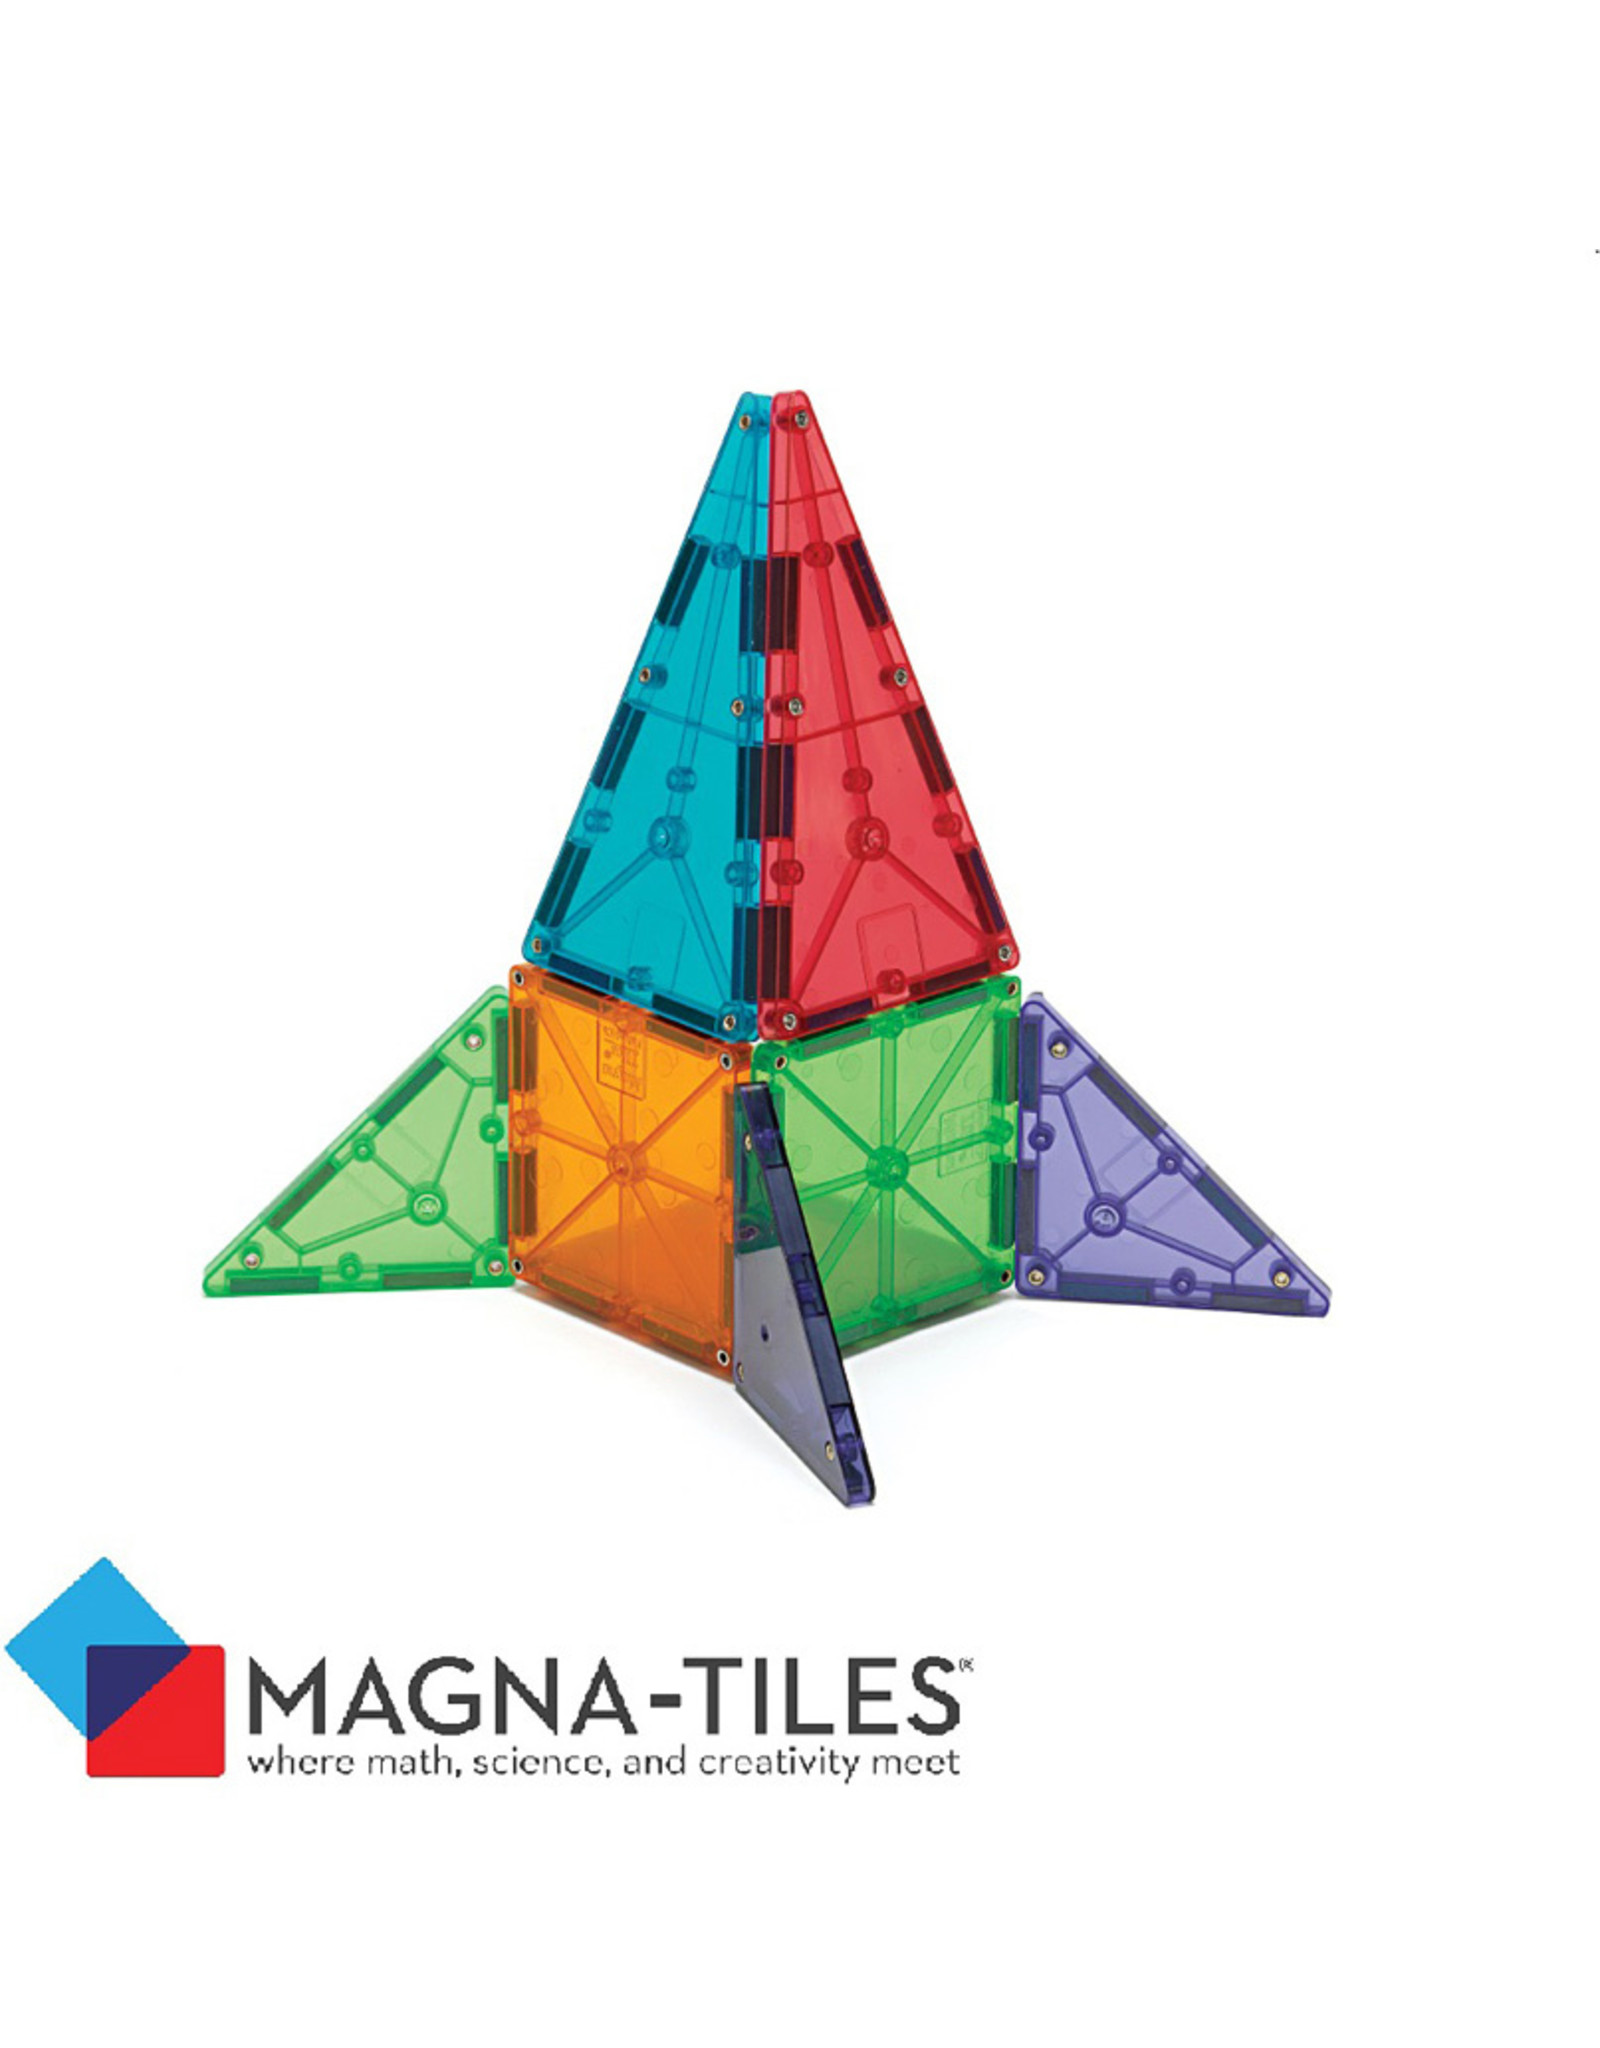 magna tiles 32 piece set